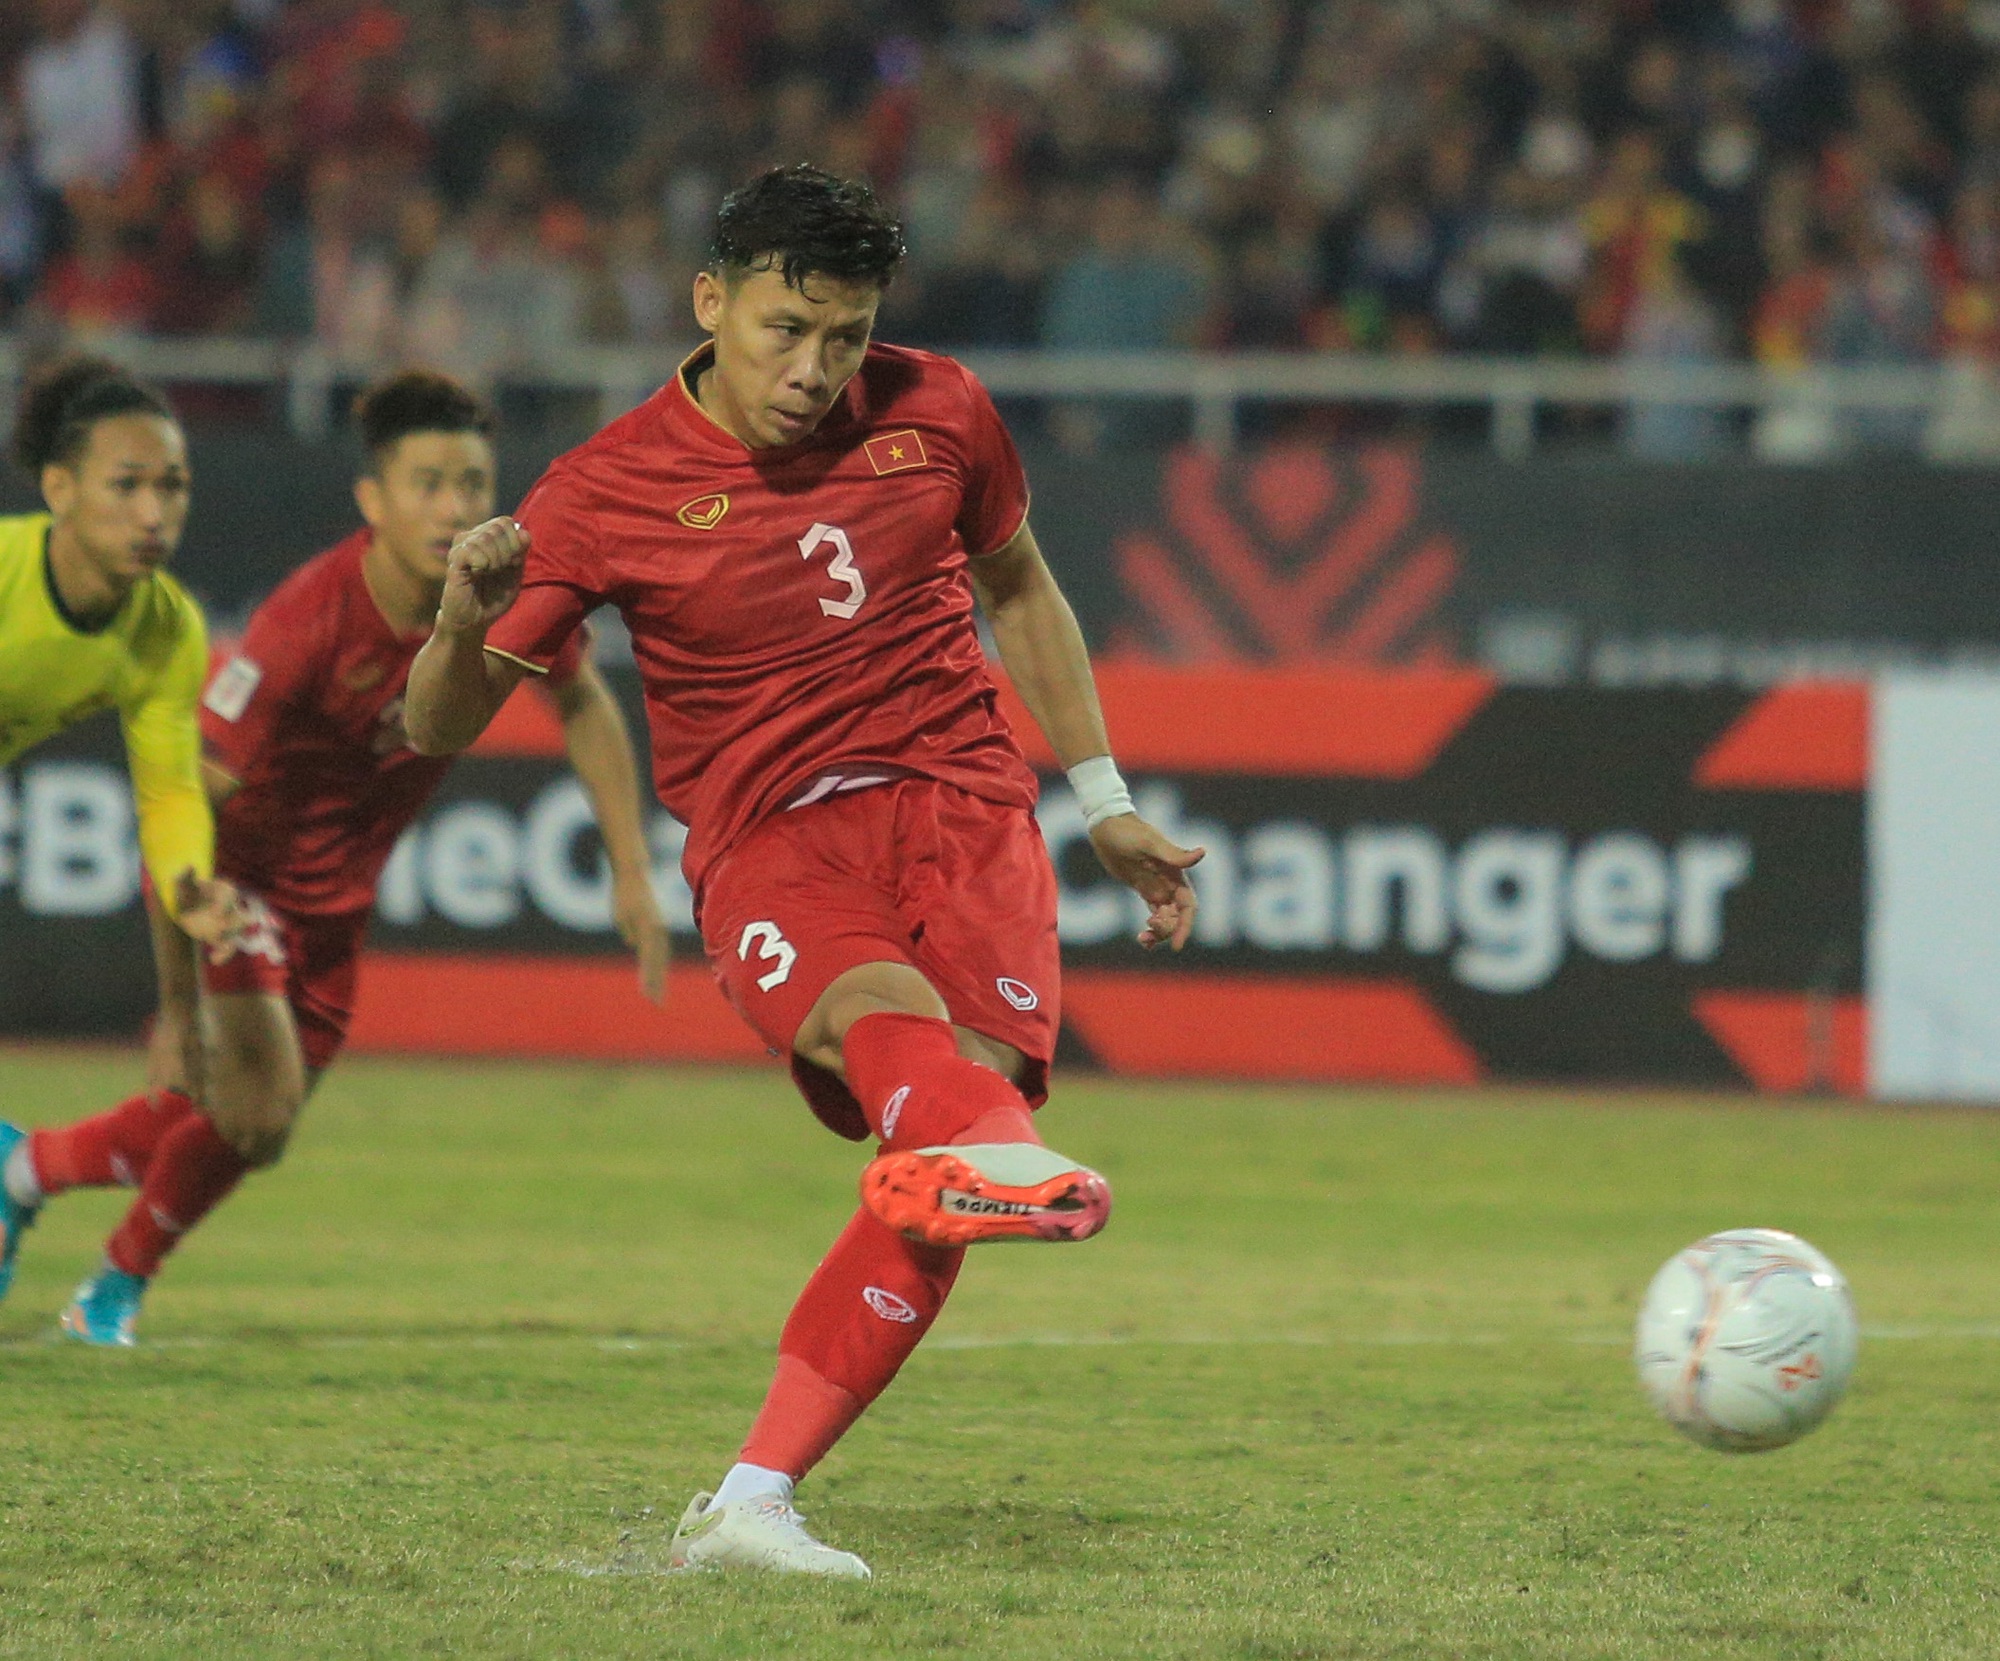 Quế Ngọc Hải ăn mừng theo phong cách của Ronaldo khi ghi bàn cho tuyển Việt Nam - Ảnh 1.